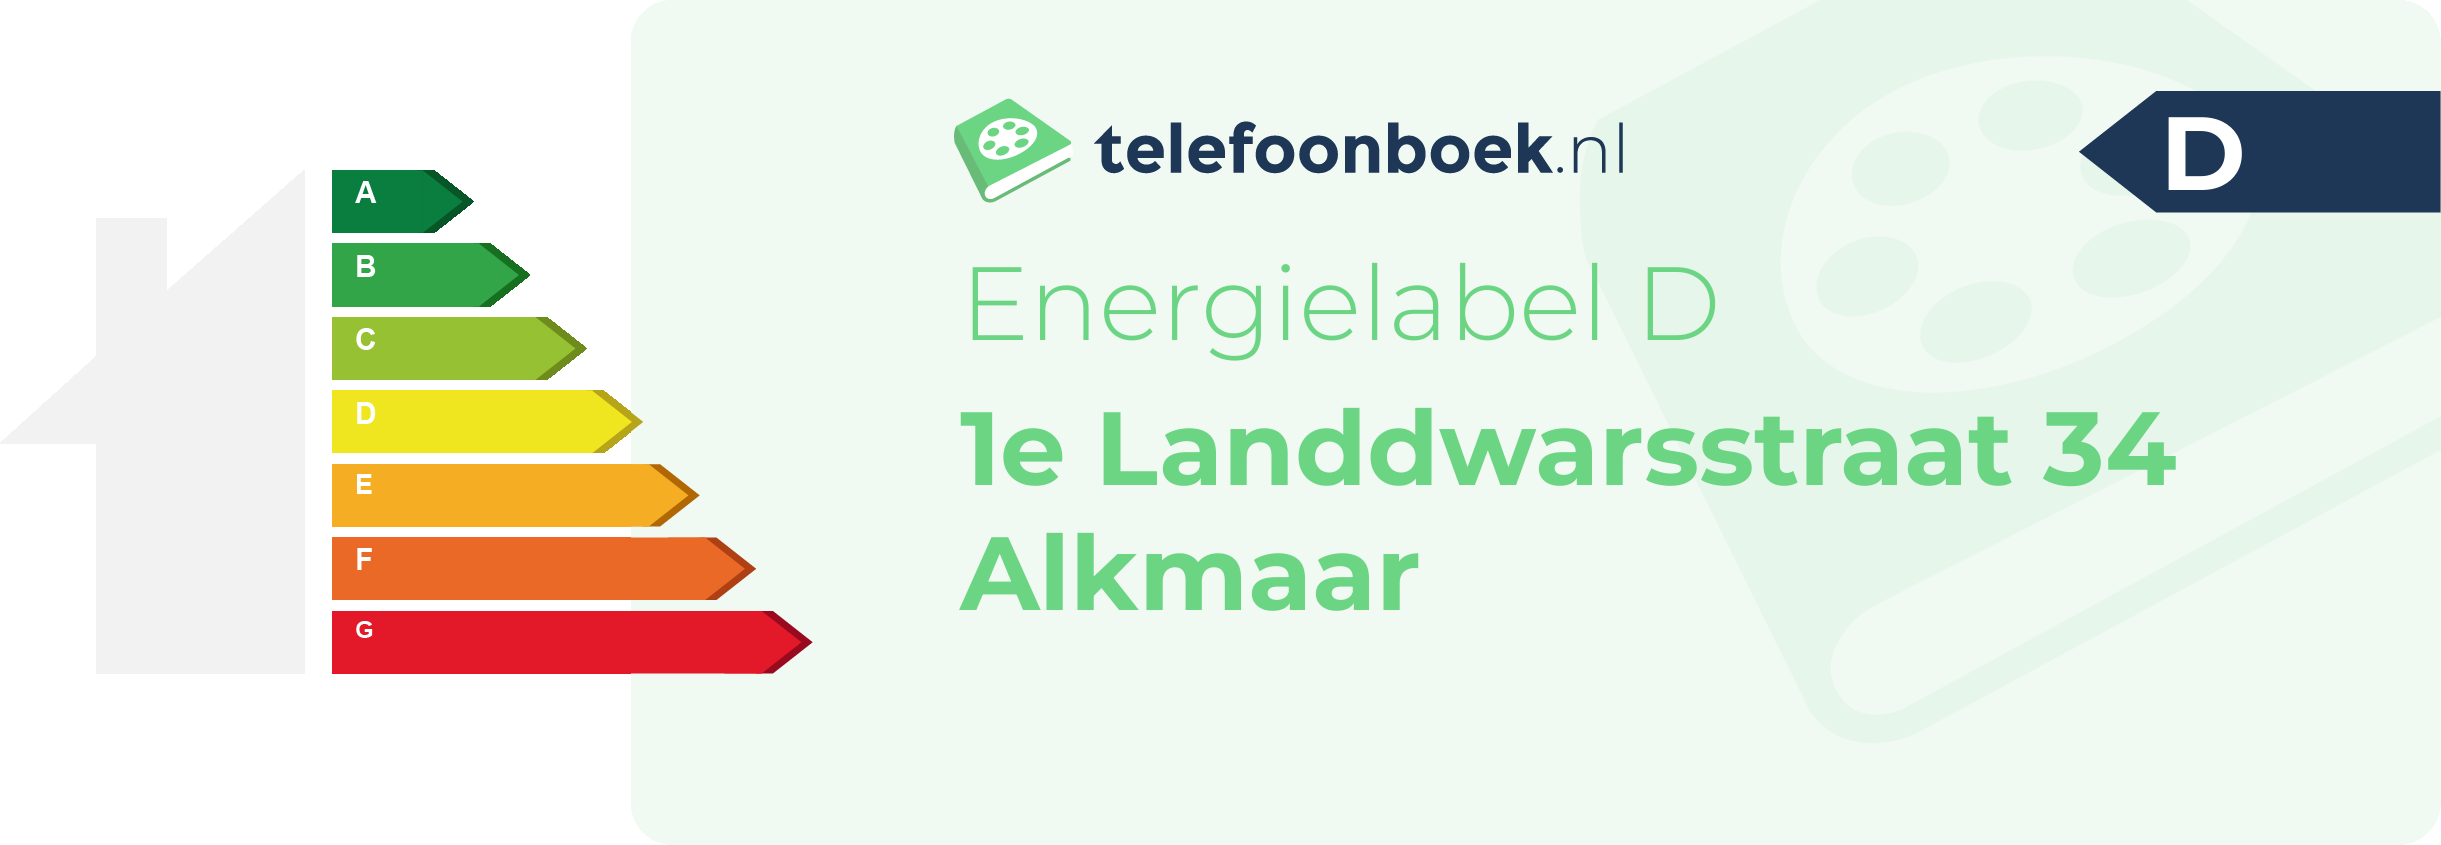 Energielabel 1e Landdwarsstraat 34 Alkmaar